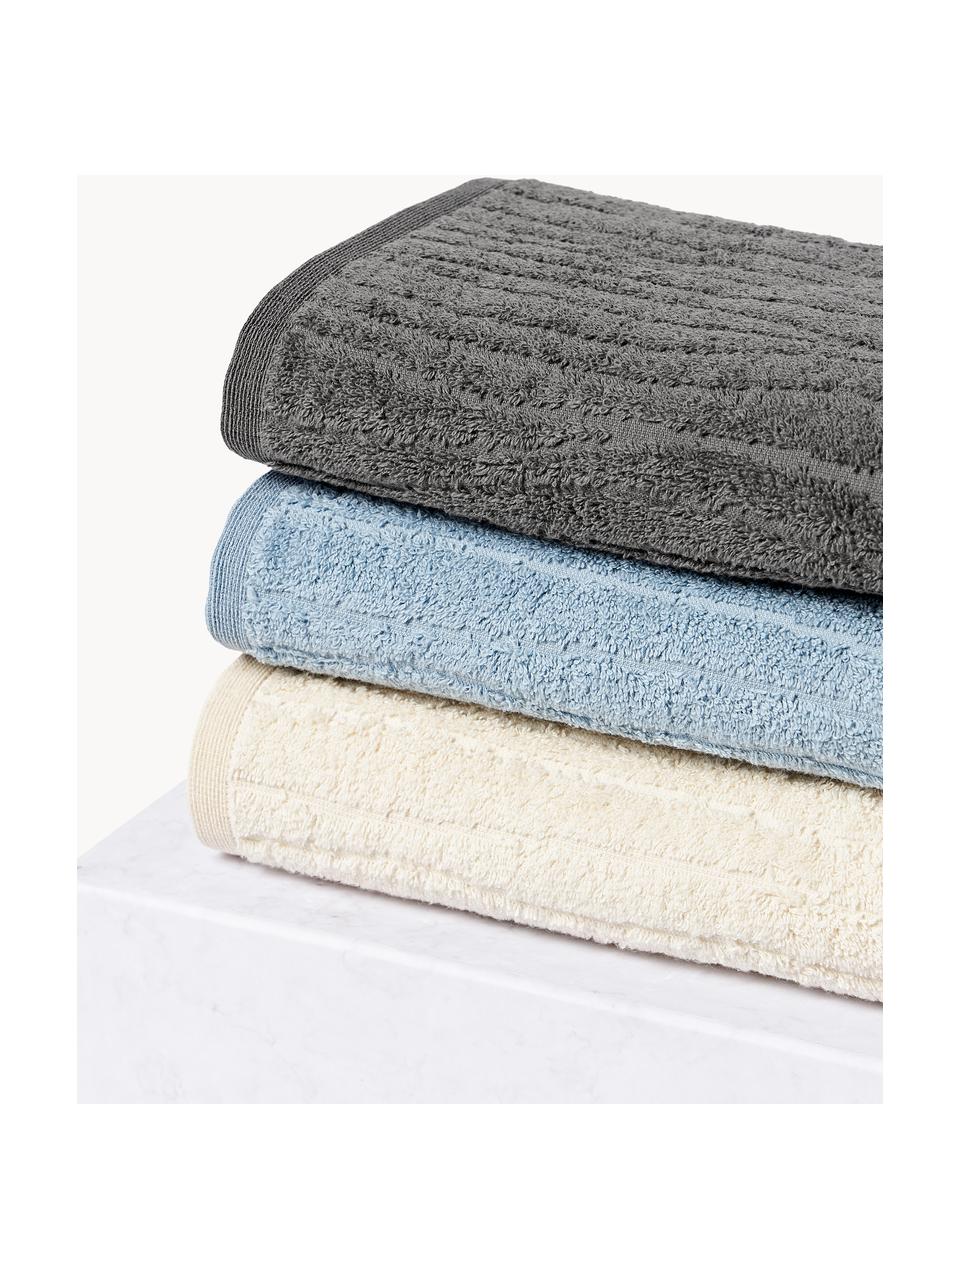 Katoenen handdoek Audrina in verschillende formaten, Lichtbeige, Handdoek, B 50 x L 100 cm, 2 stuks